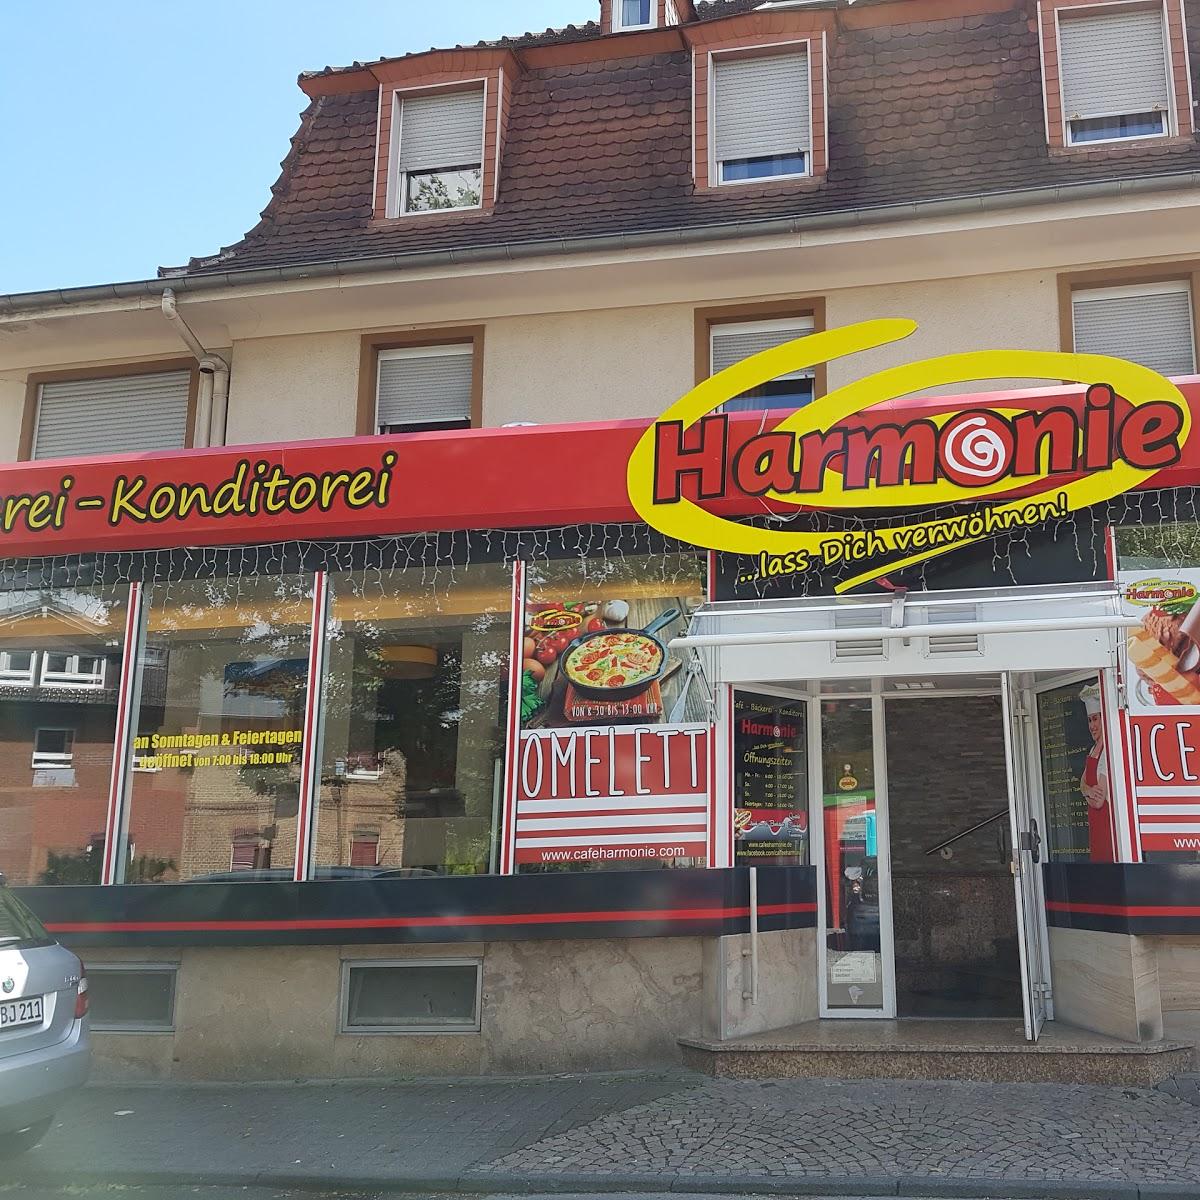 Restaurant "Café Harmonie Bad Soden" in Bad Soden am Taunus